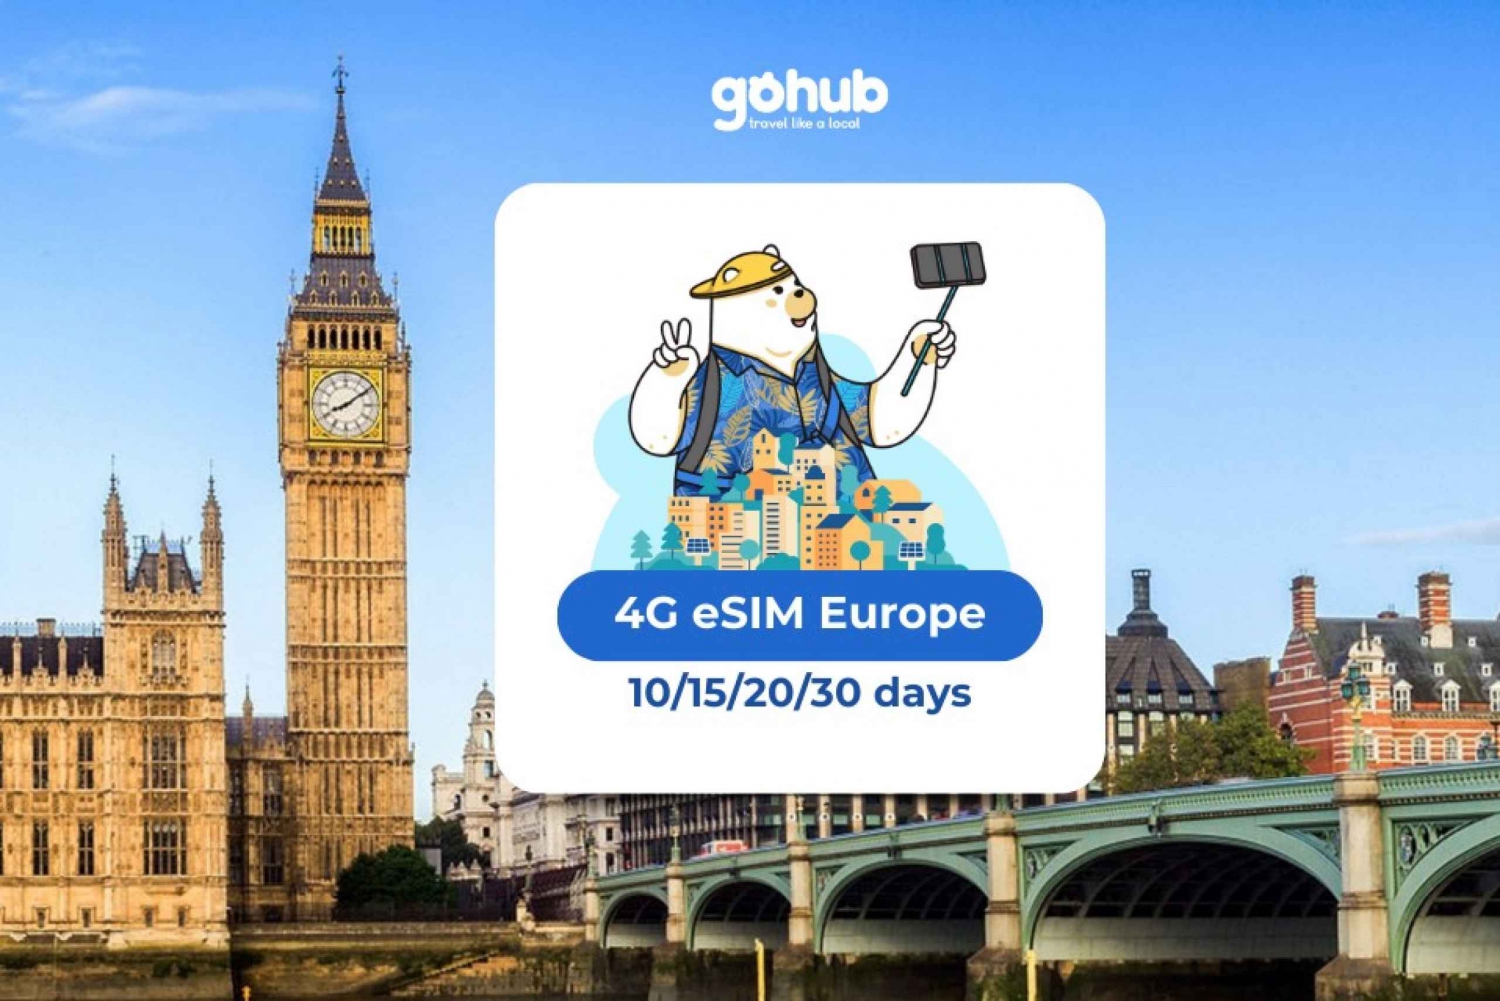 Europa: eSIM Datos móviles (33 países) - 10/15/20/30 días